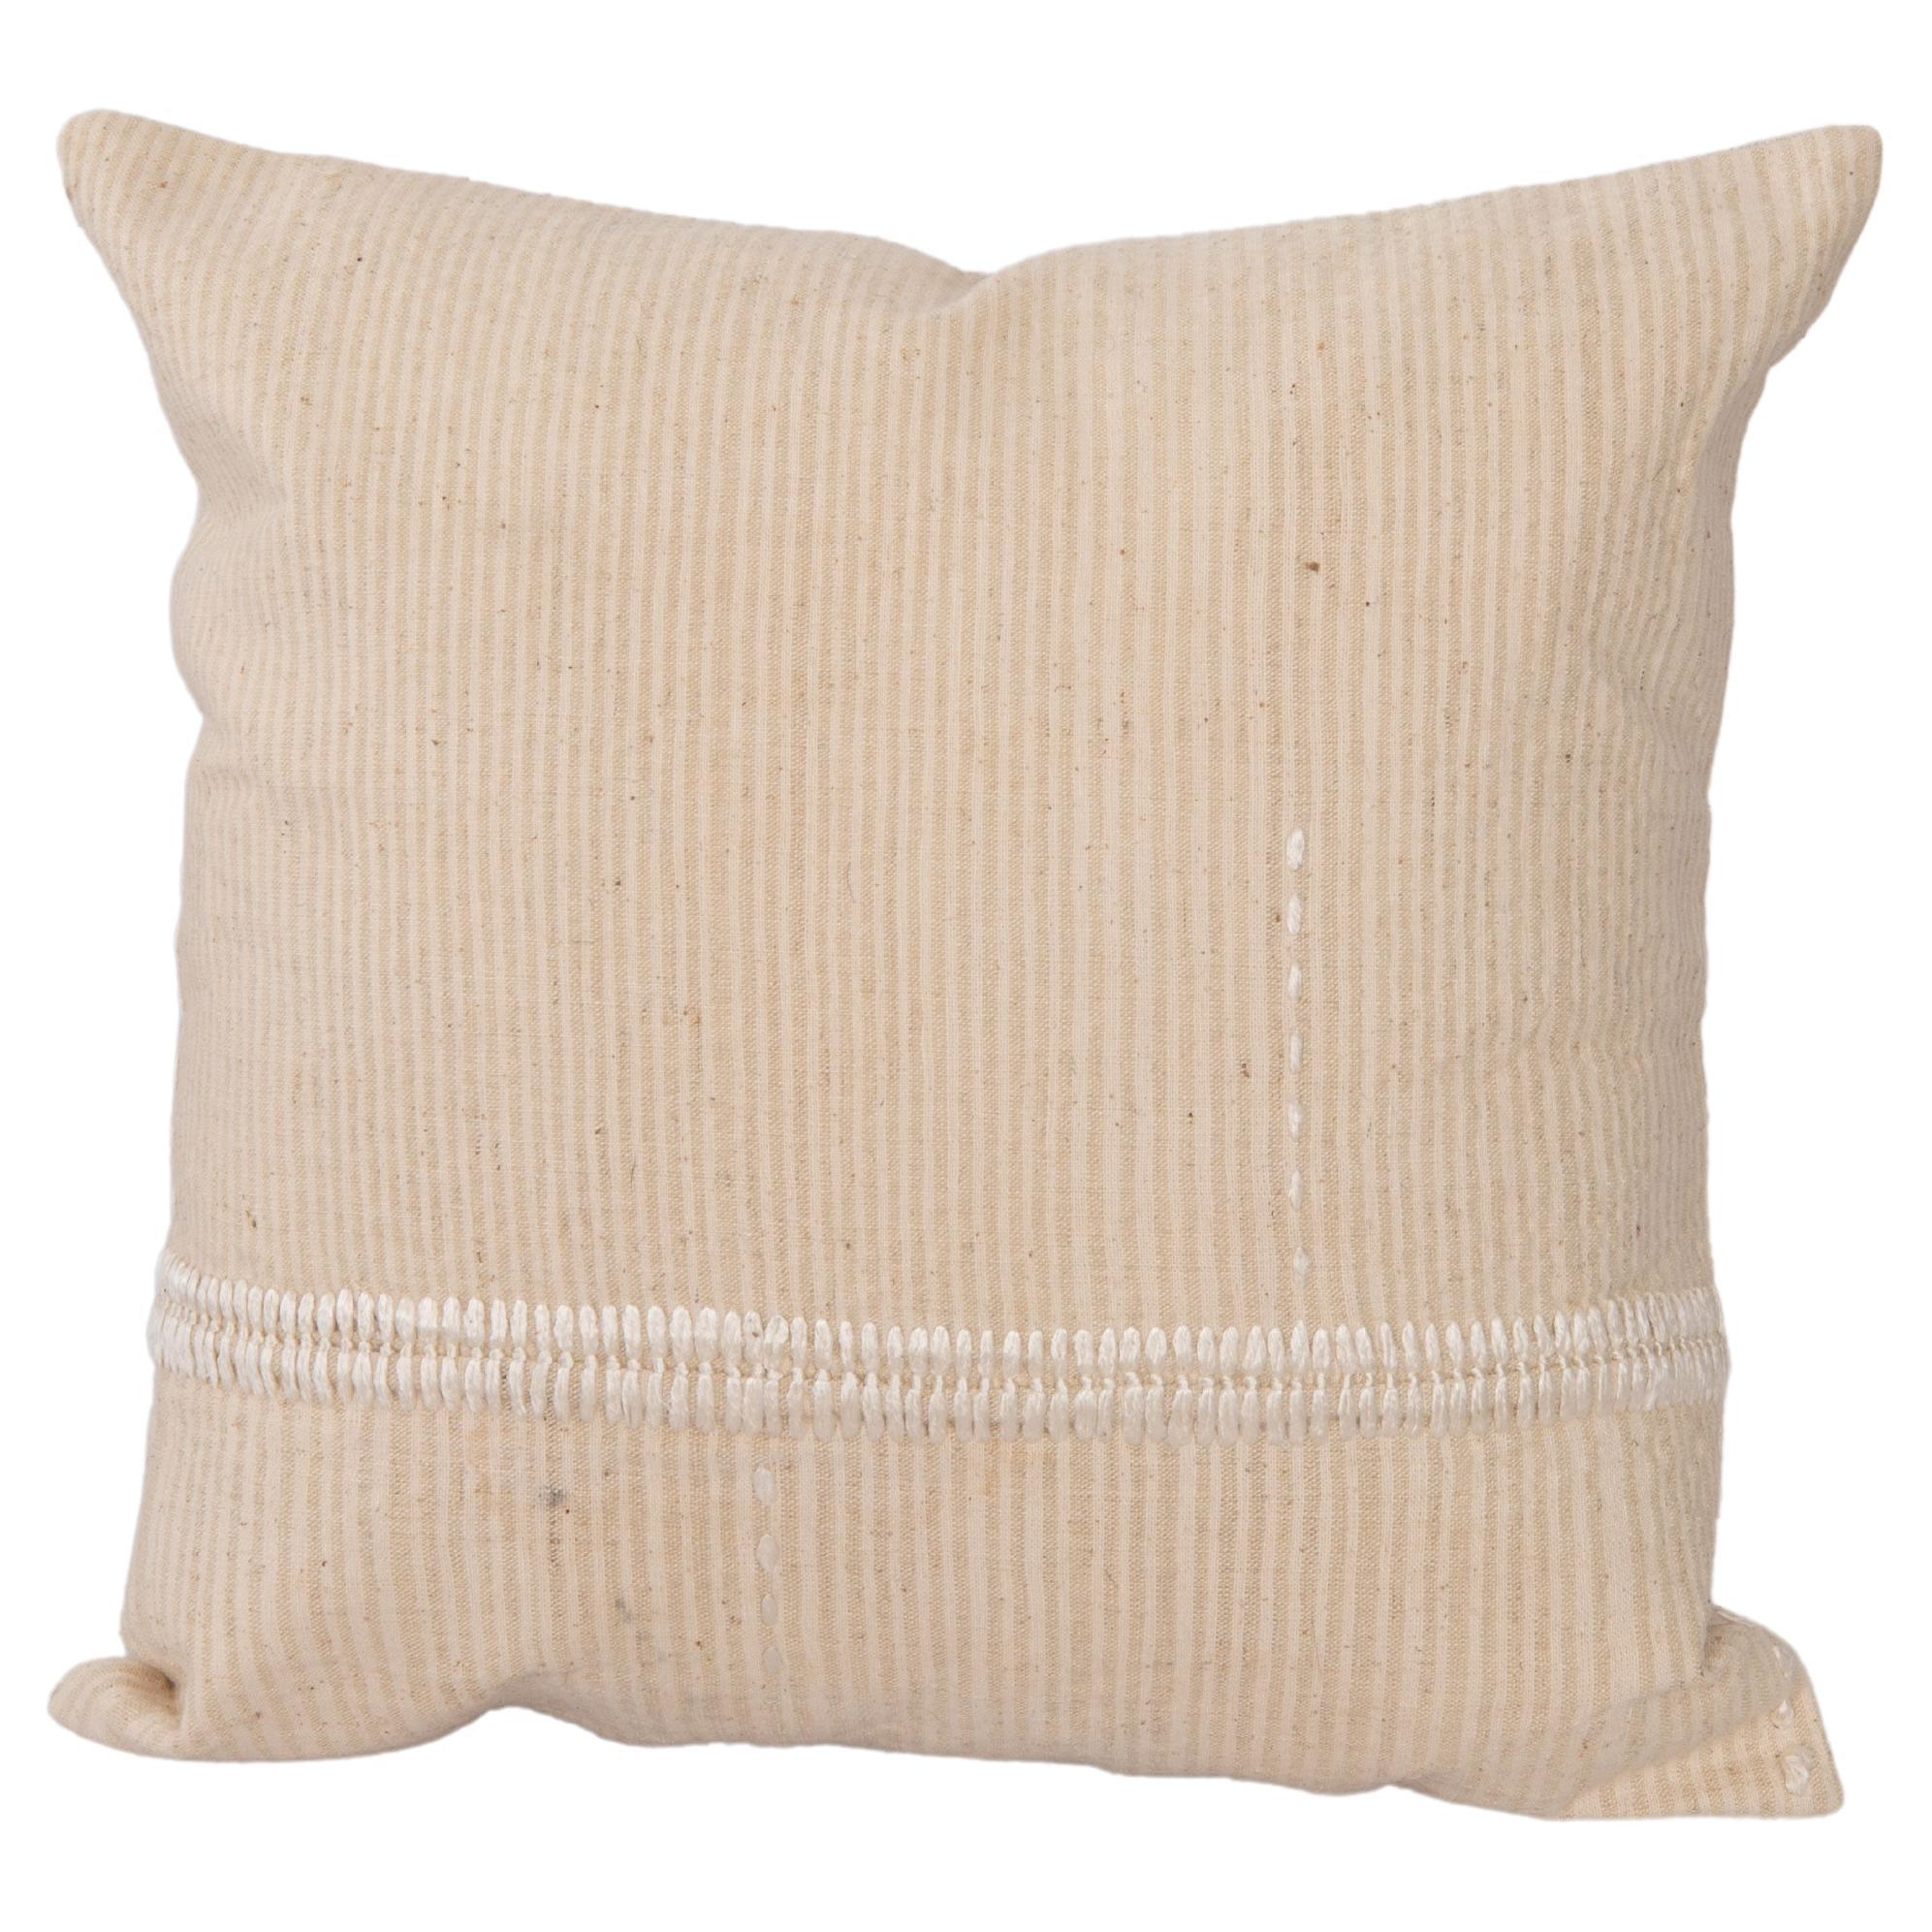 Mid 20th C. Pillow Cover Made from Vintage Anatolian Covers (housse de coussin du milieu du 20e siècle fabriquée à partir de couvertures anatoliennes d'époque) en vente